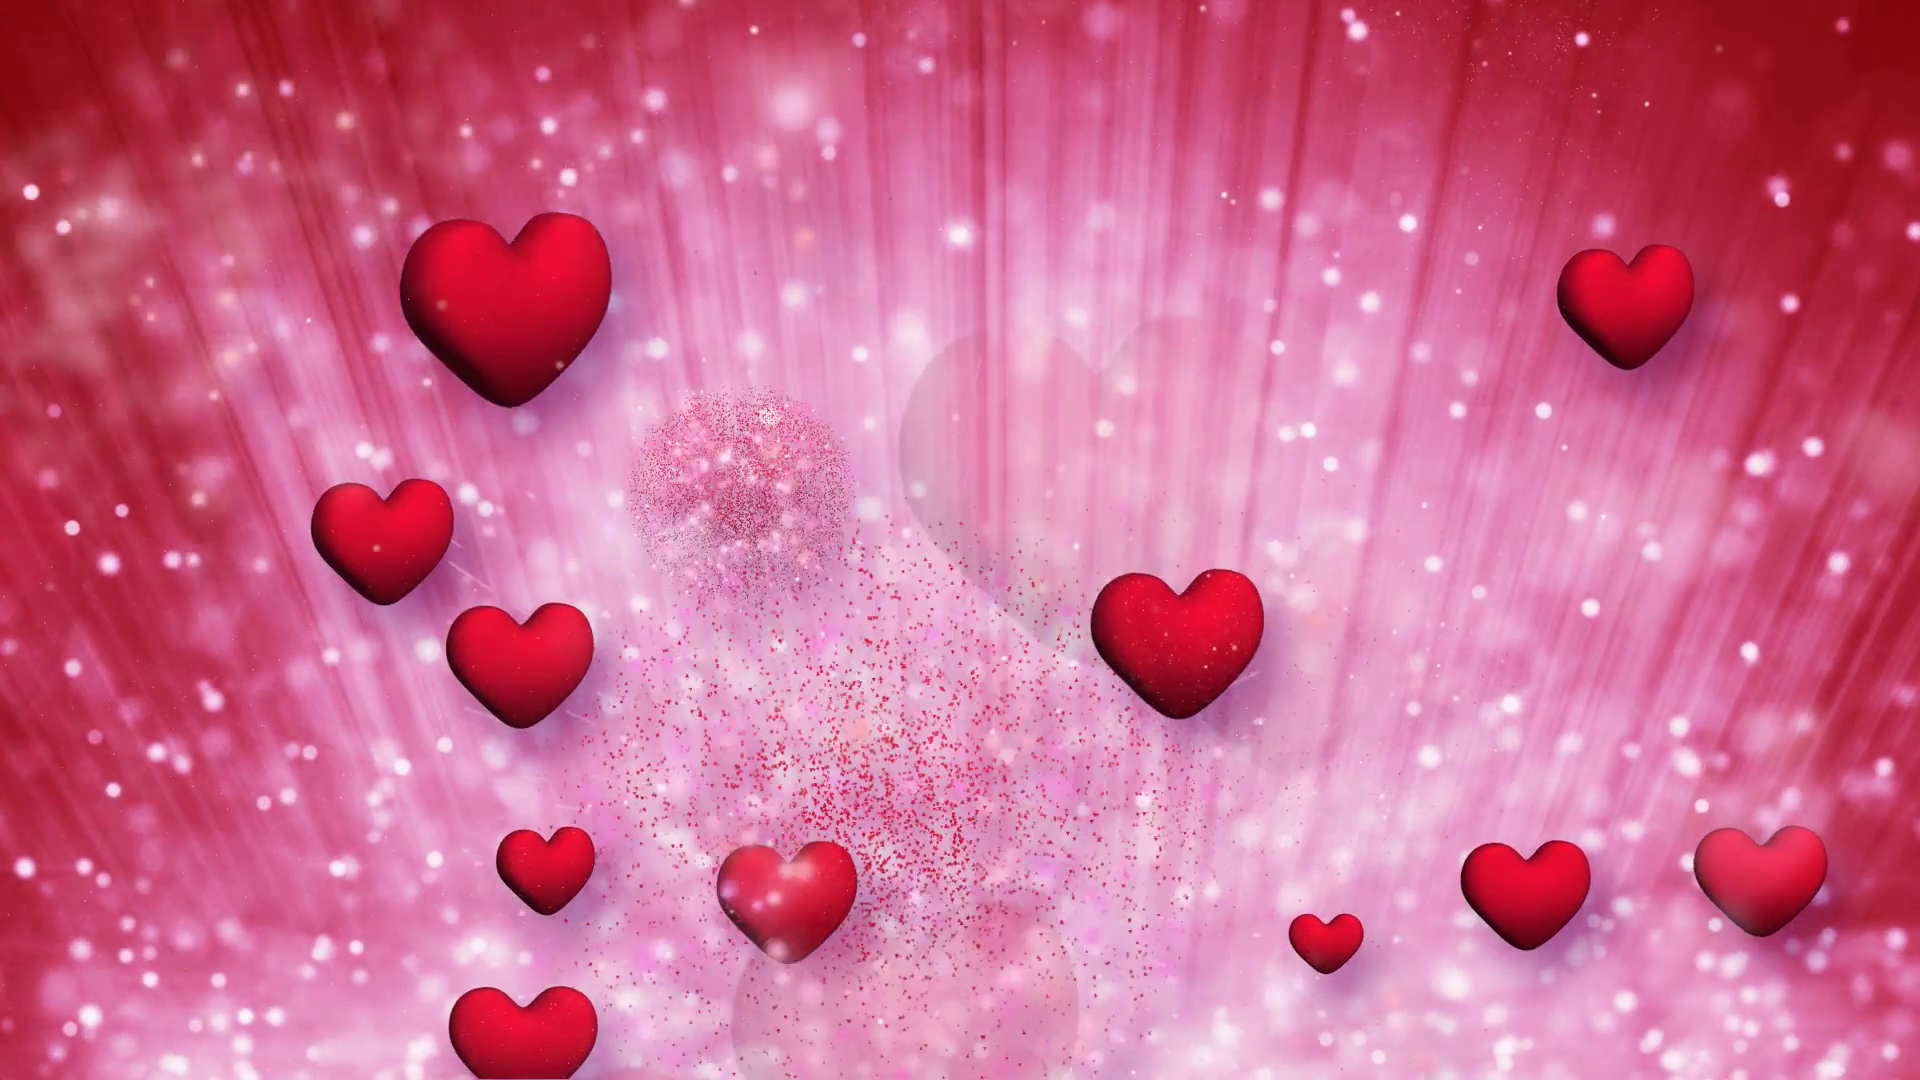 Heart Love Pink 1920x1080